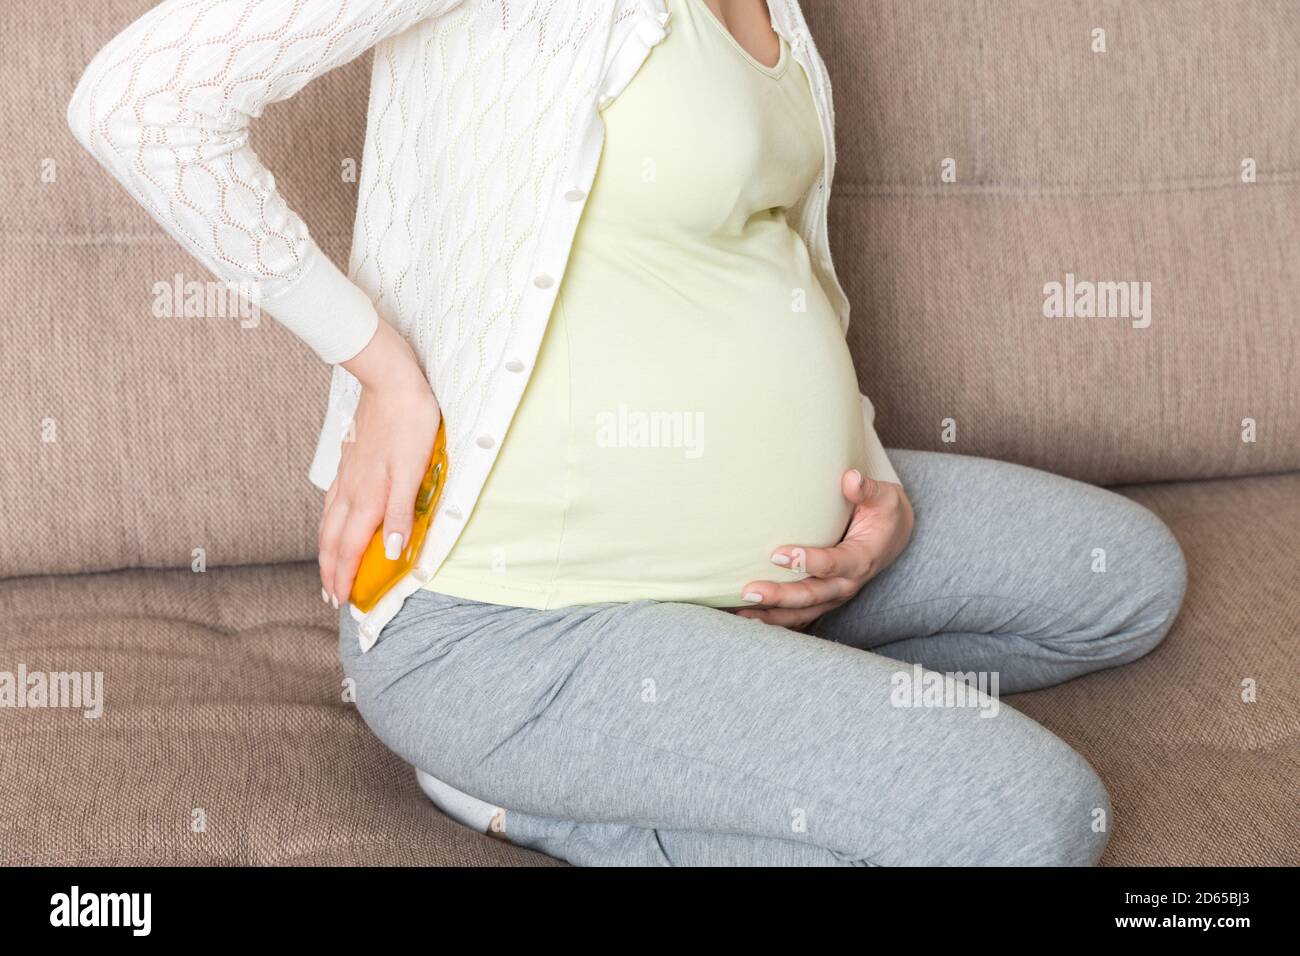 Schwangere Frau leiden unter Rückenschmerzen hält eine heiße Flasche oder einen warmen wärmer gegen ihren Rücken. Konzept schwangere Frau Lebensstil und Gesundheitsversorgung. Stockfoto